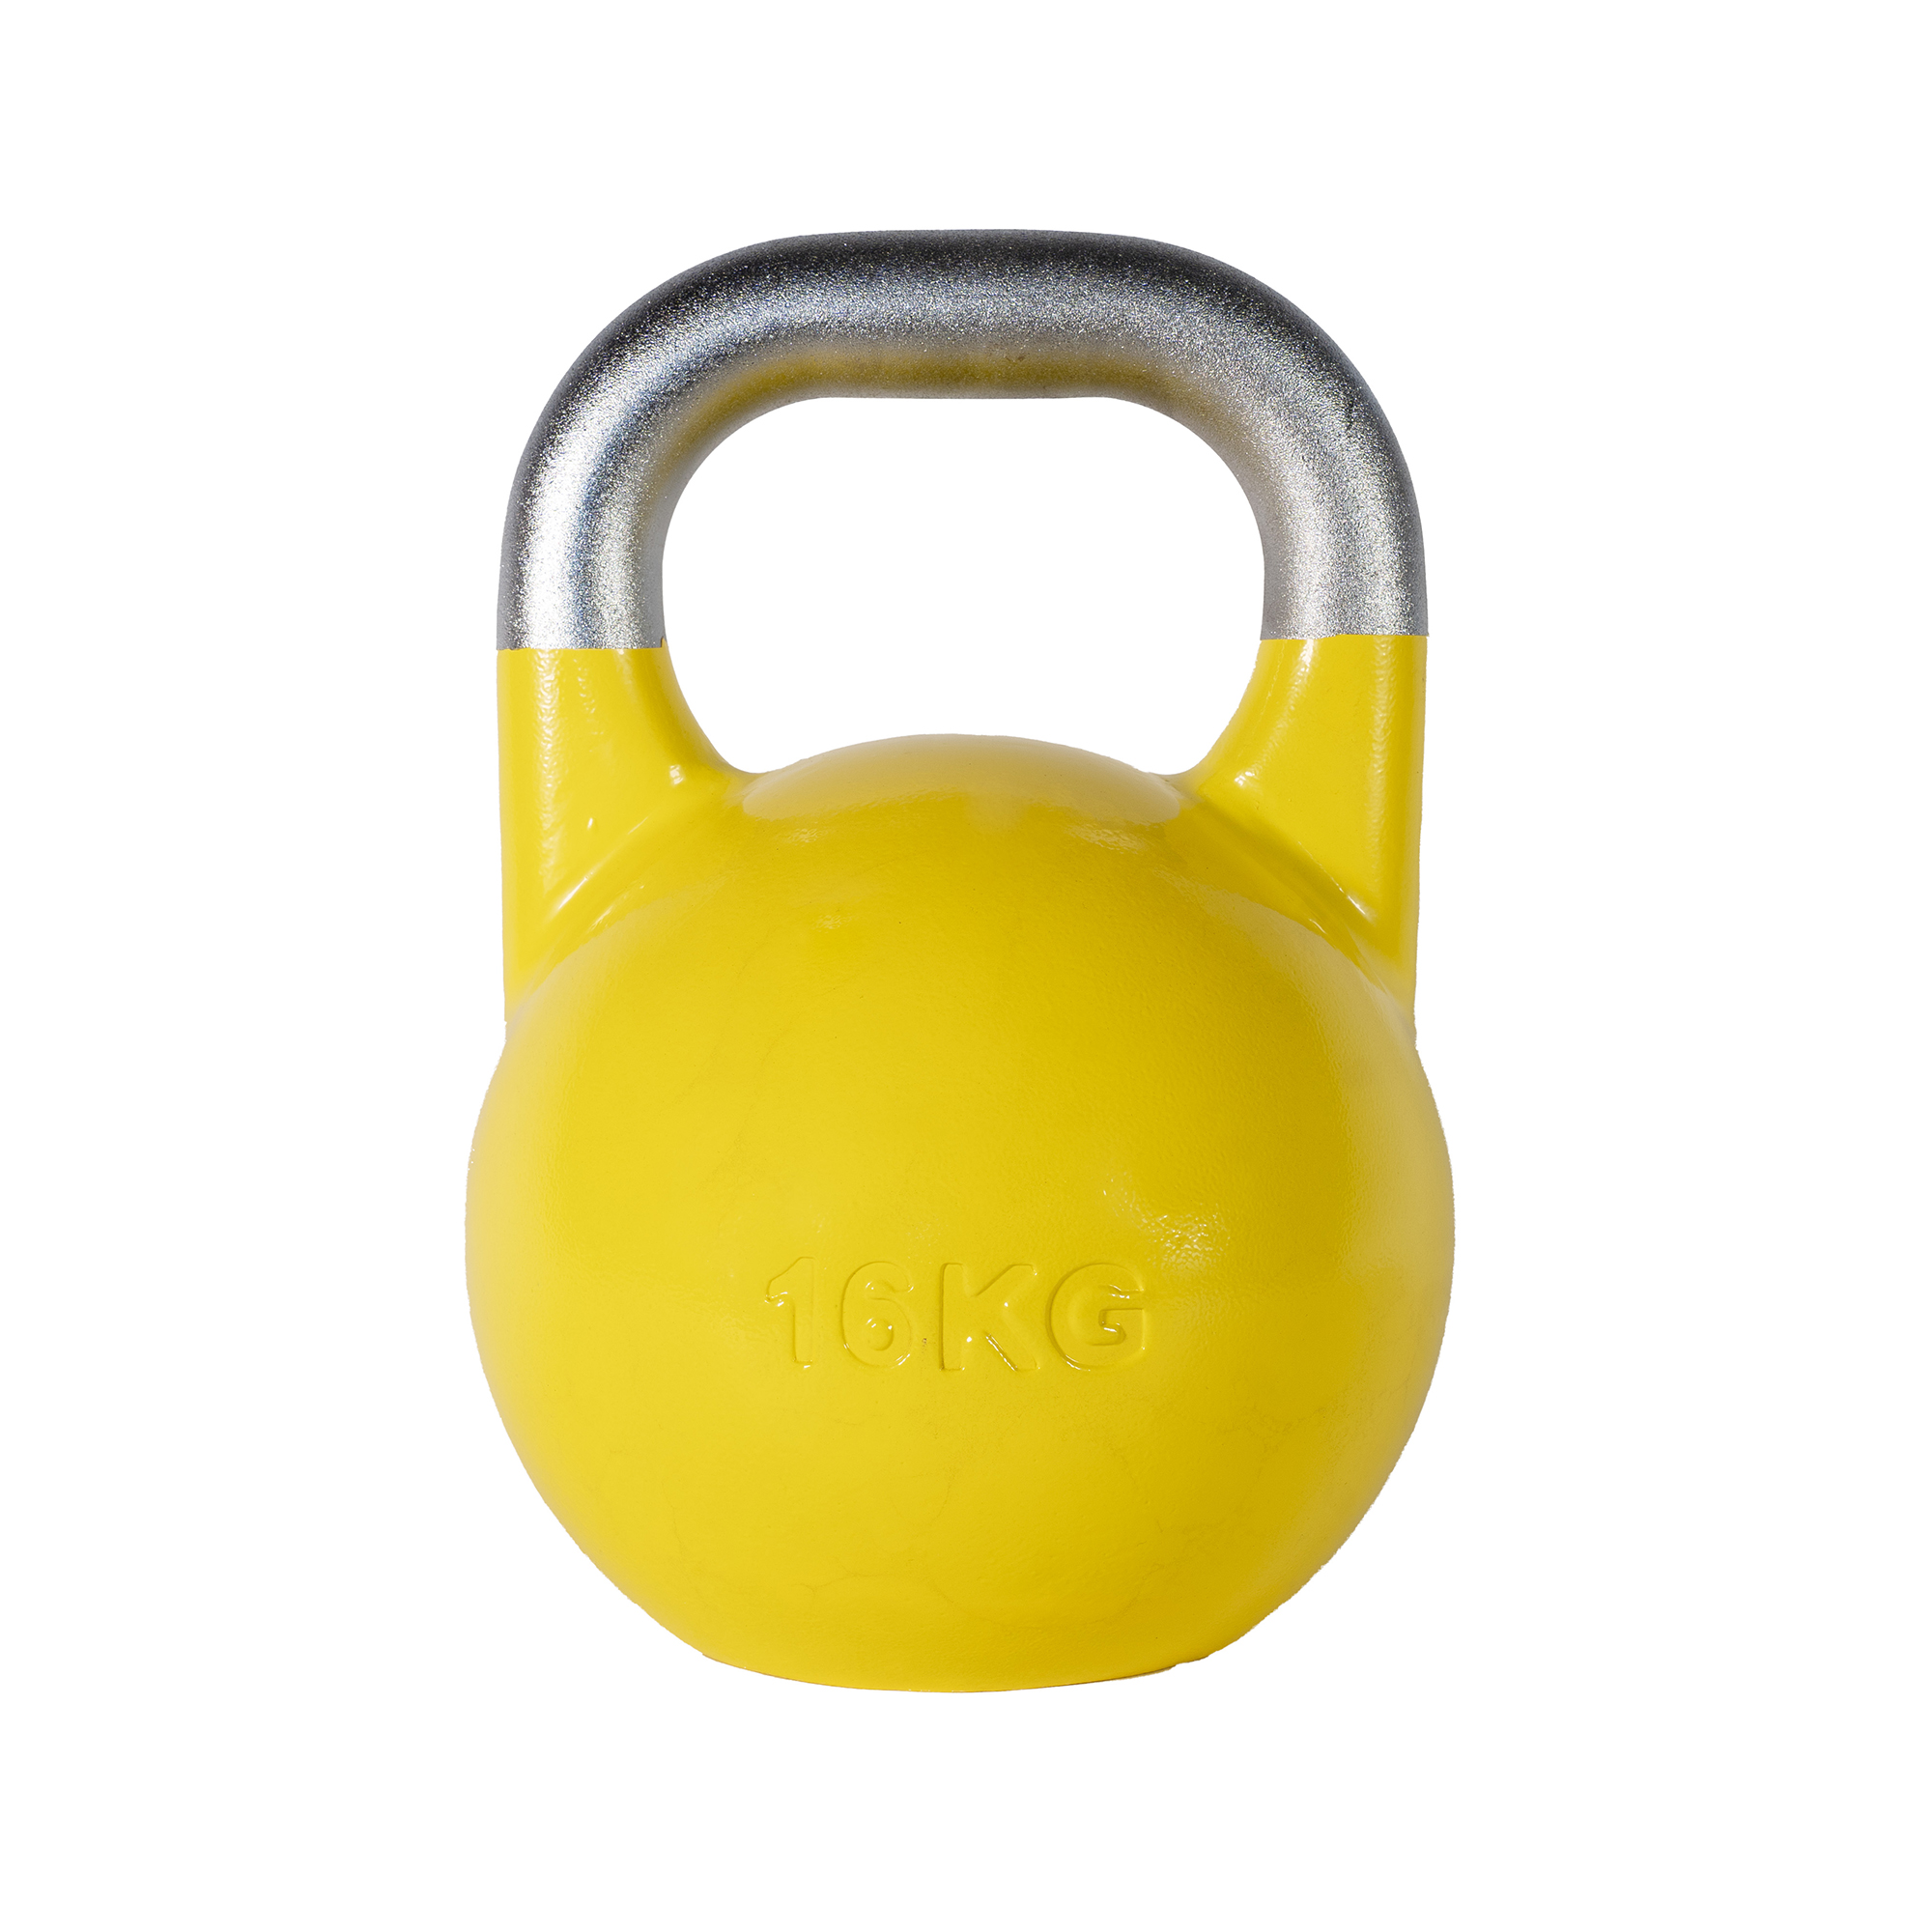 SQ&amp;SN Competition Kettlebell (16 kg) i støbejern. Udstyr til crossfit træning, styrketræning og funktionel træning